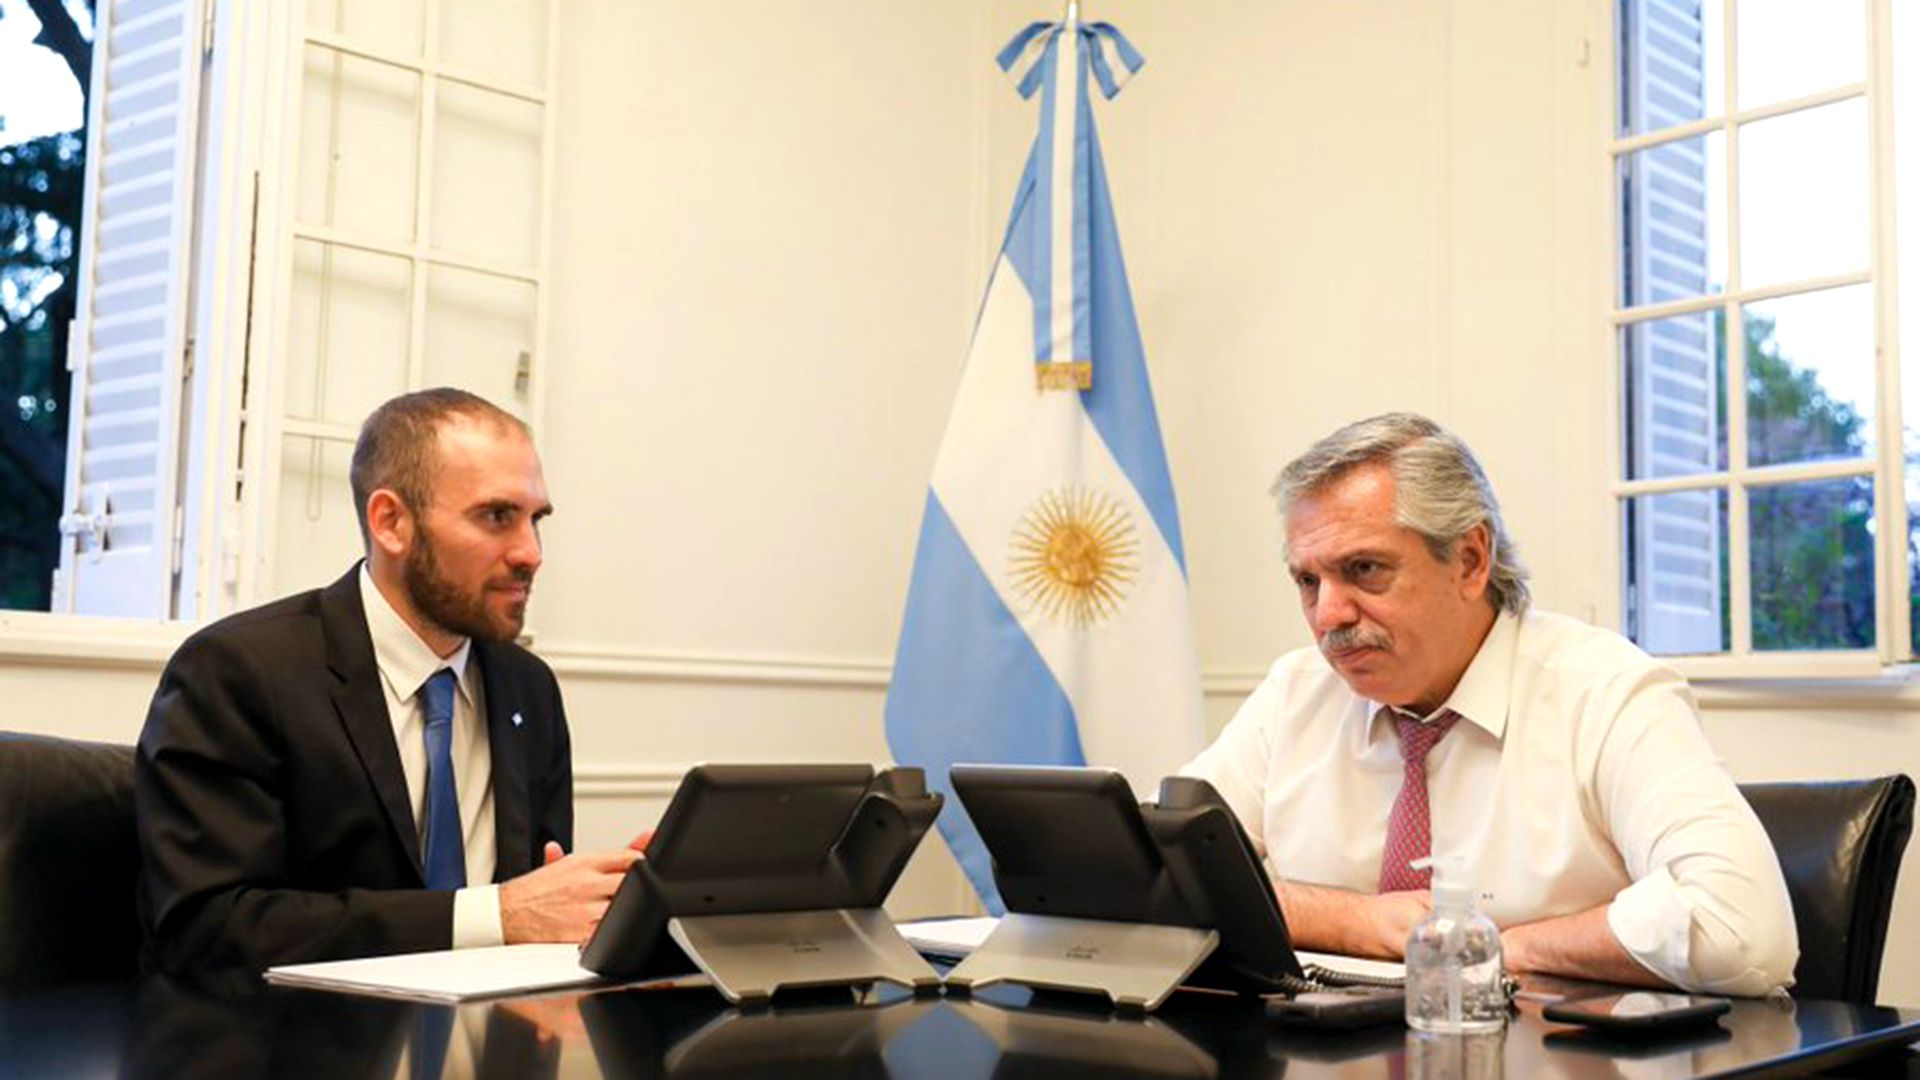 El presidente Alberto Fernández mantuvo este sábado una reunión con el ministro de Economía, Martín Guzmán, para interiorizarse en la marcha de la negociación con los bonistas. (@alferdez)